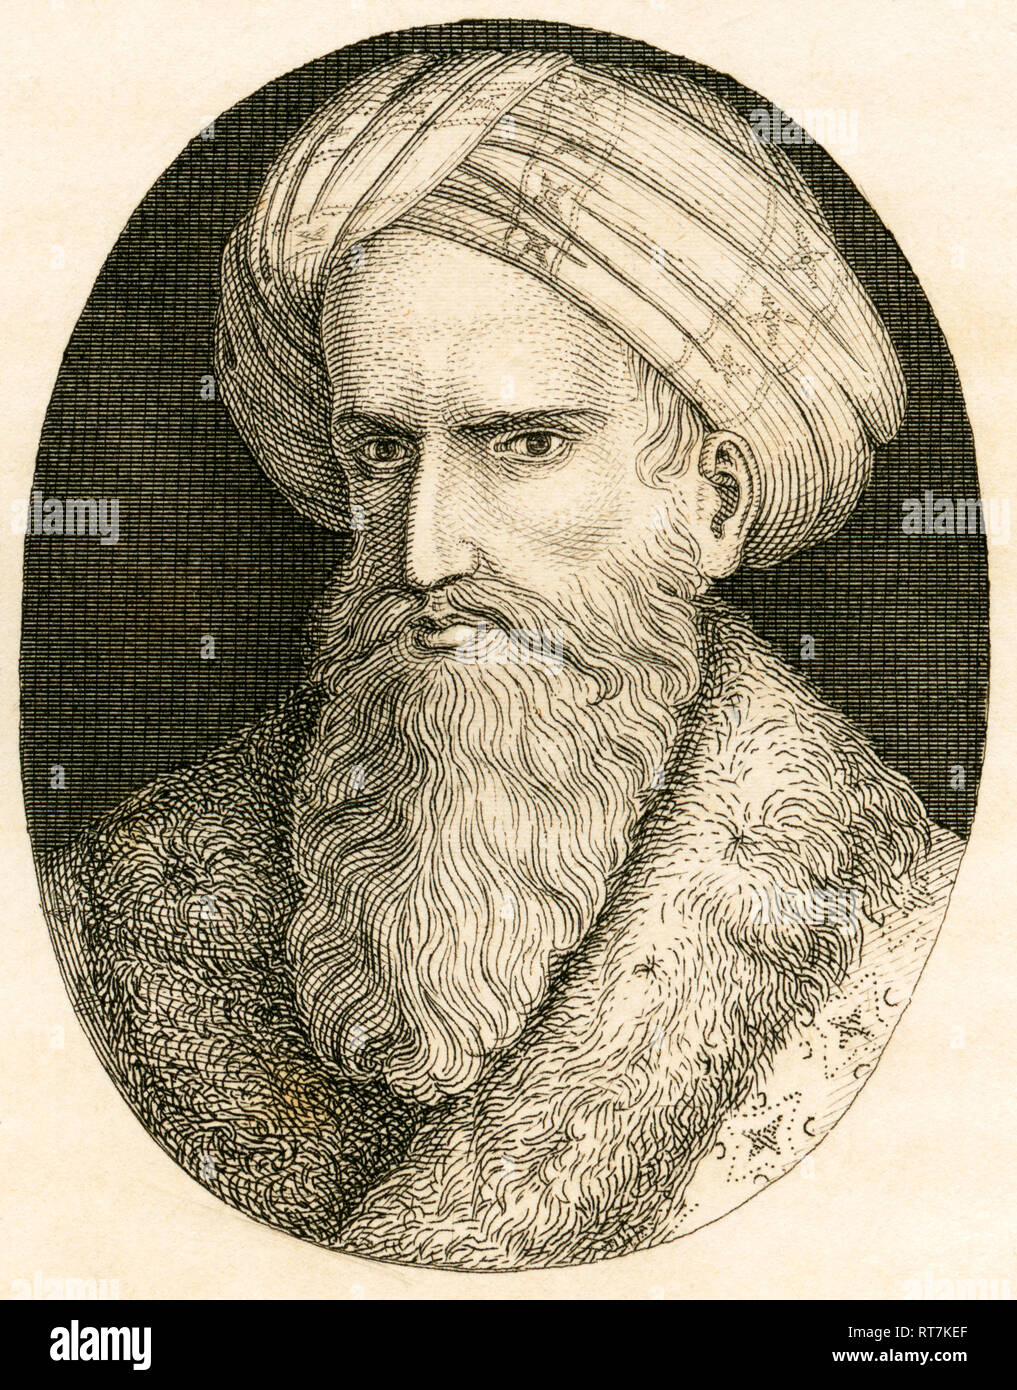 Harun al-Rashid, el quinto califa abasí, grabado de Strahlheim copperplate, 1840ª., Copyright del artista no ha de ser borrado Foto de stock